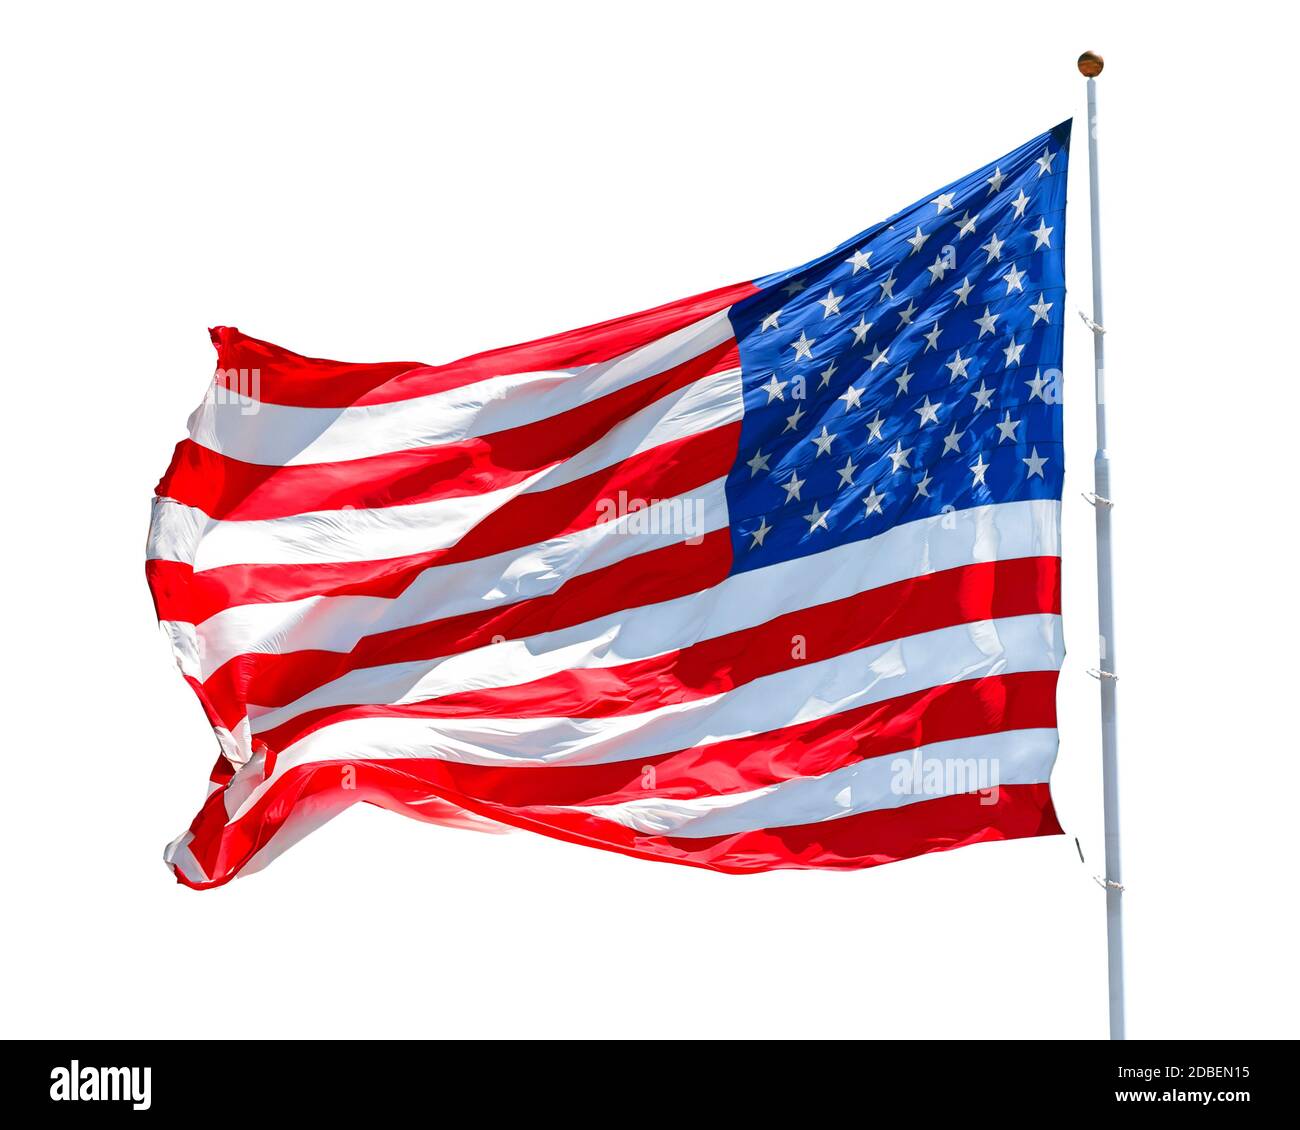 Amerikanische Flagge winkt im Wind, isoliert auf weißem Hintergrund, Bewegung der US-Flagge in Nahaufnahme, rote weiße blaue Flagge im Freien bei Sonnenlicht. Nationalflagge der Vereinigten Staaten von Amerika. USA Stars und Stripes Stockfoto